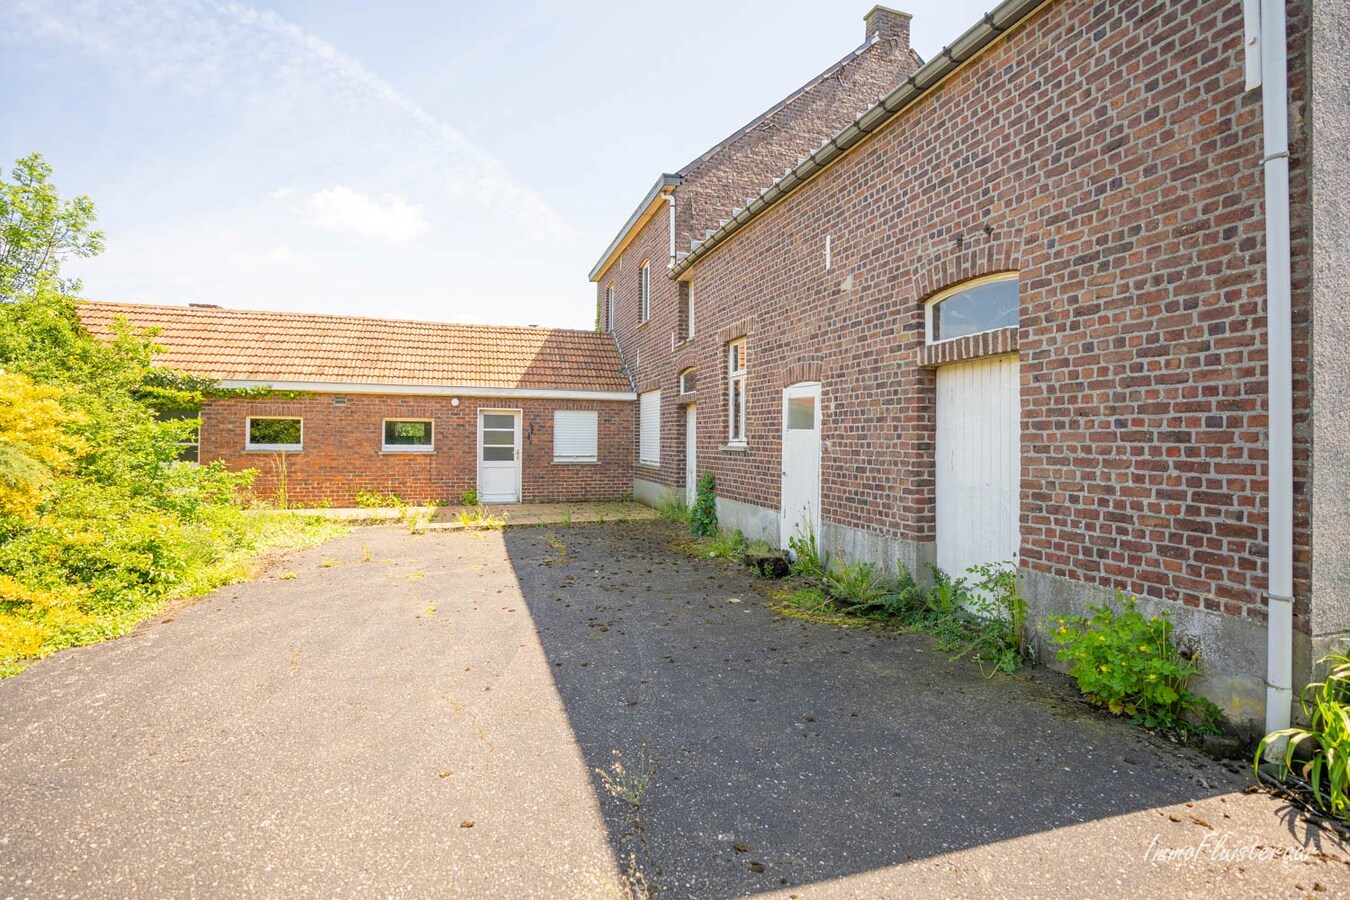 Maison calme et situ&#233;e &#224; la campagne avec d&#233;pendances sur environ 1,28 ha &#224; Bekkevoort (Brabant flamand). 